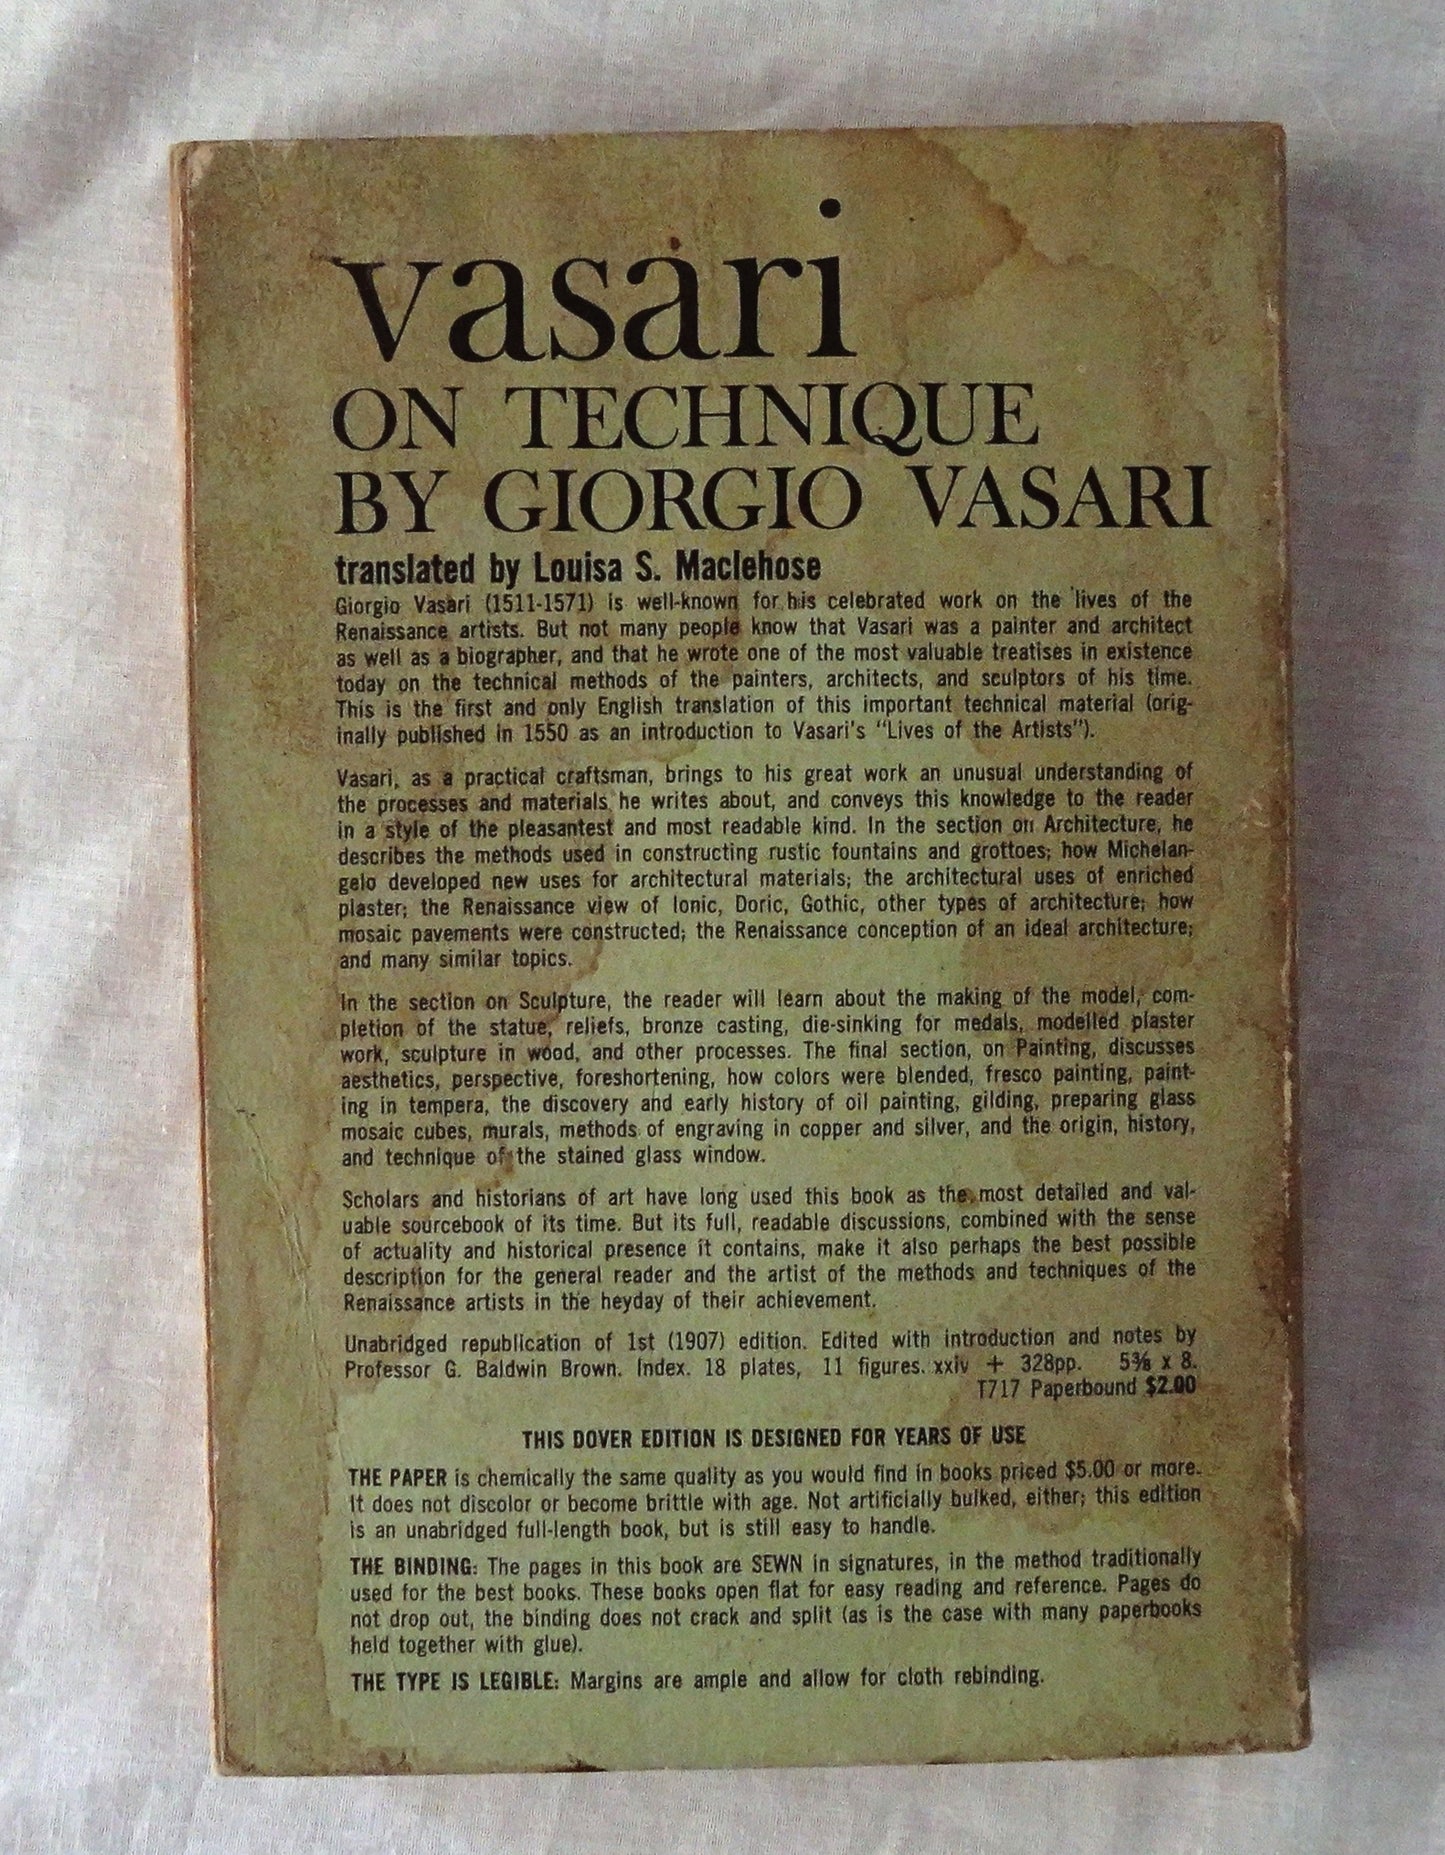 Vasari on Technique by Giorgio Vasari